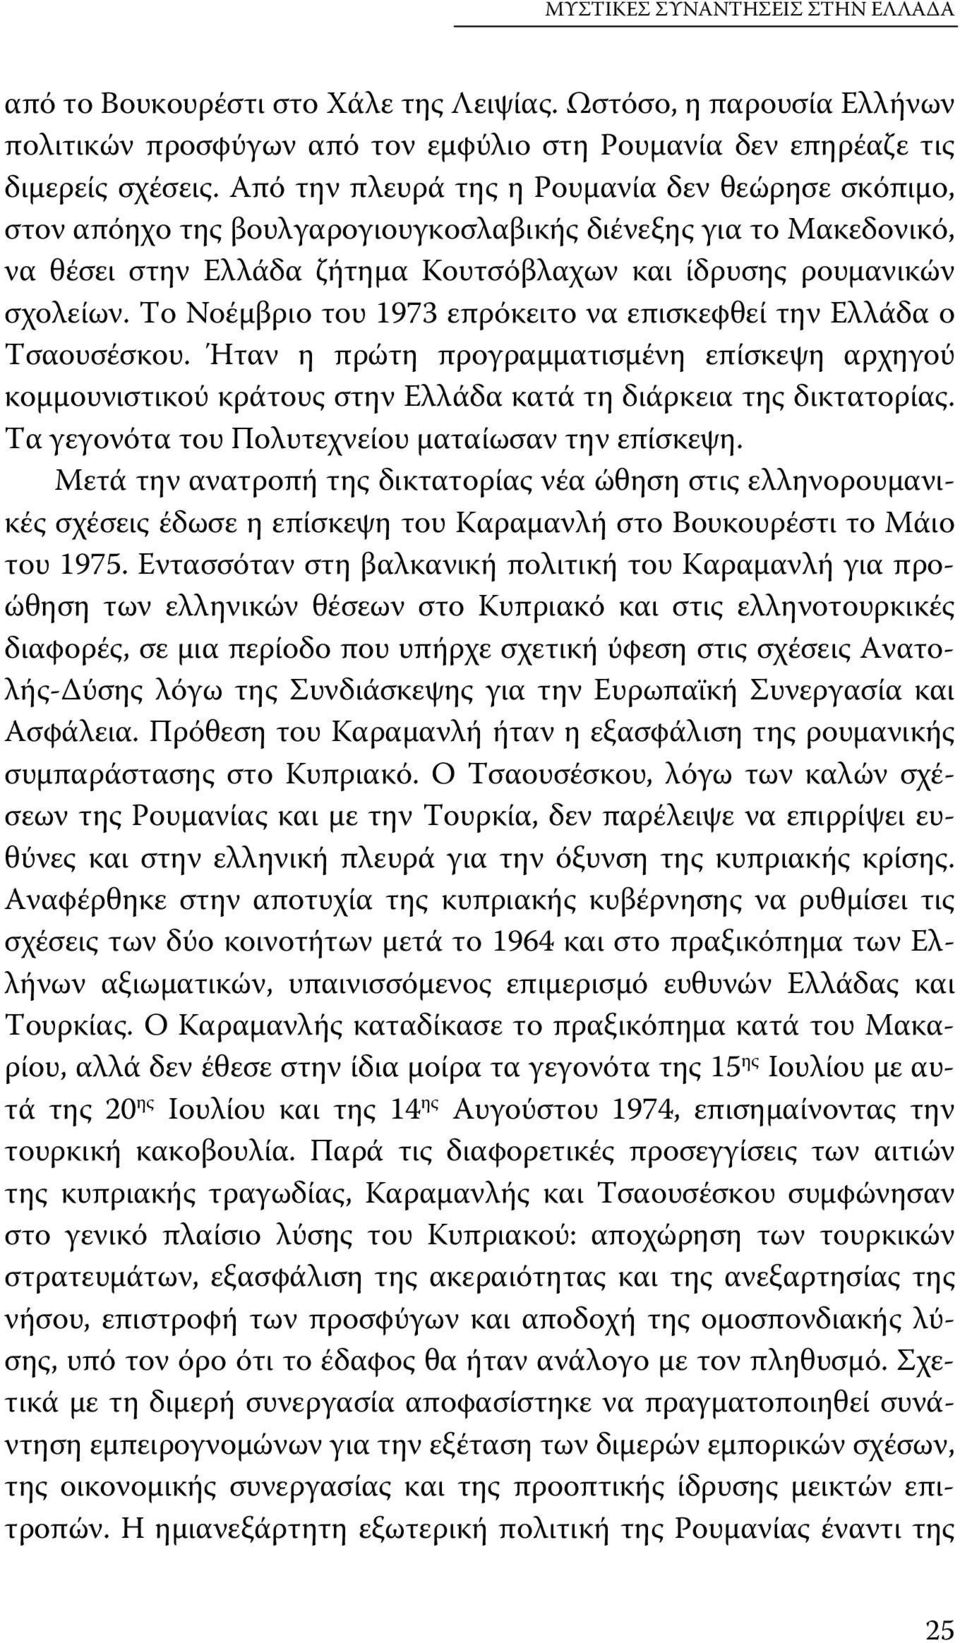 Το Νοέμβριο του 1973 επρόκειτο να επισκεφθεί την Ελλάδα ο Τσαουσέσκου. Ήταν η πρώτη προγραμματισμένη επίσκεψη αρχηγού κομμουνιστικού κράτους στην Ελλάδα κατά τη διάρκεια της δικτατορίας.